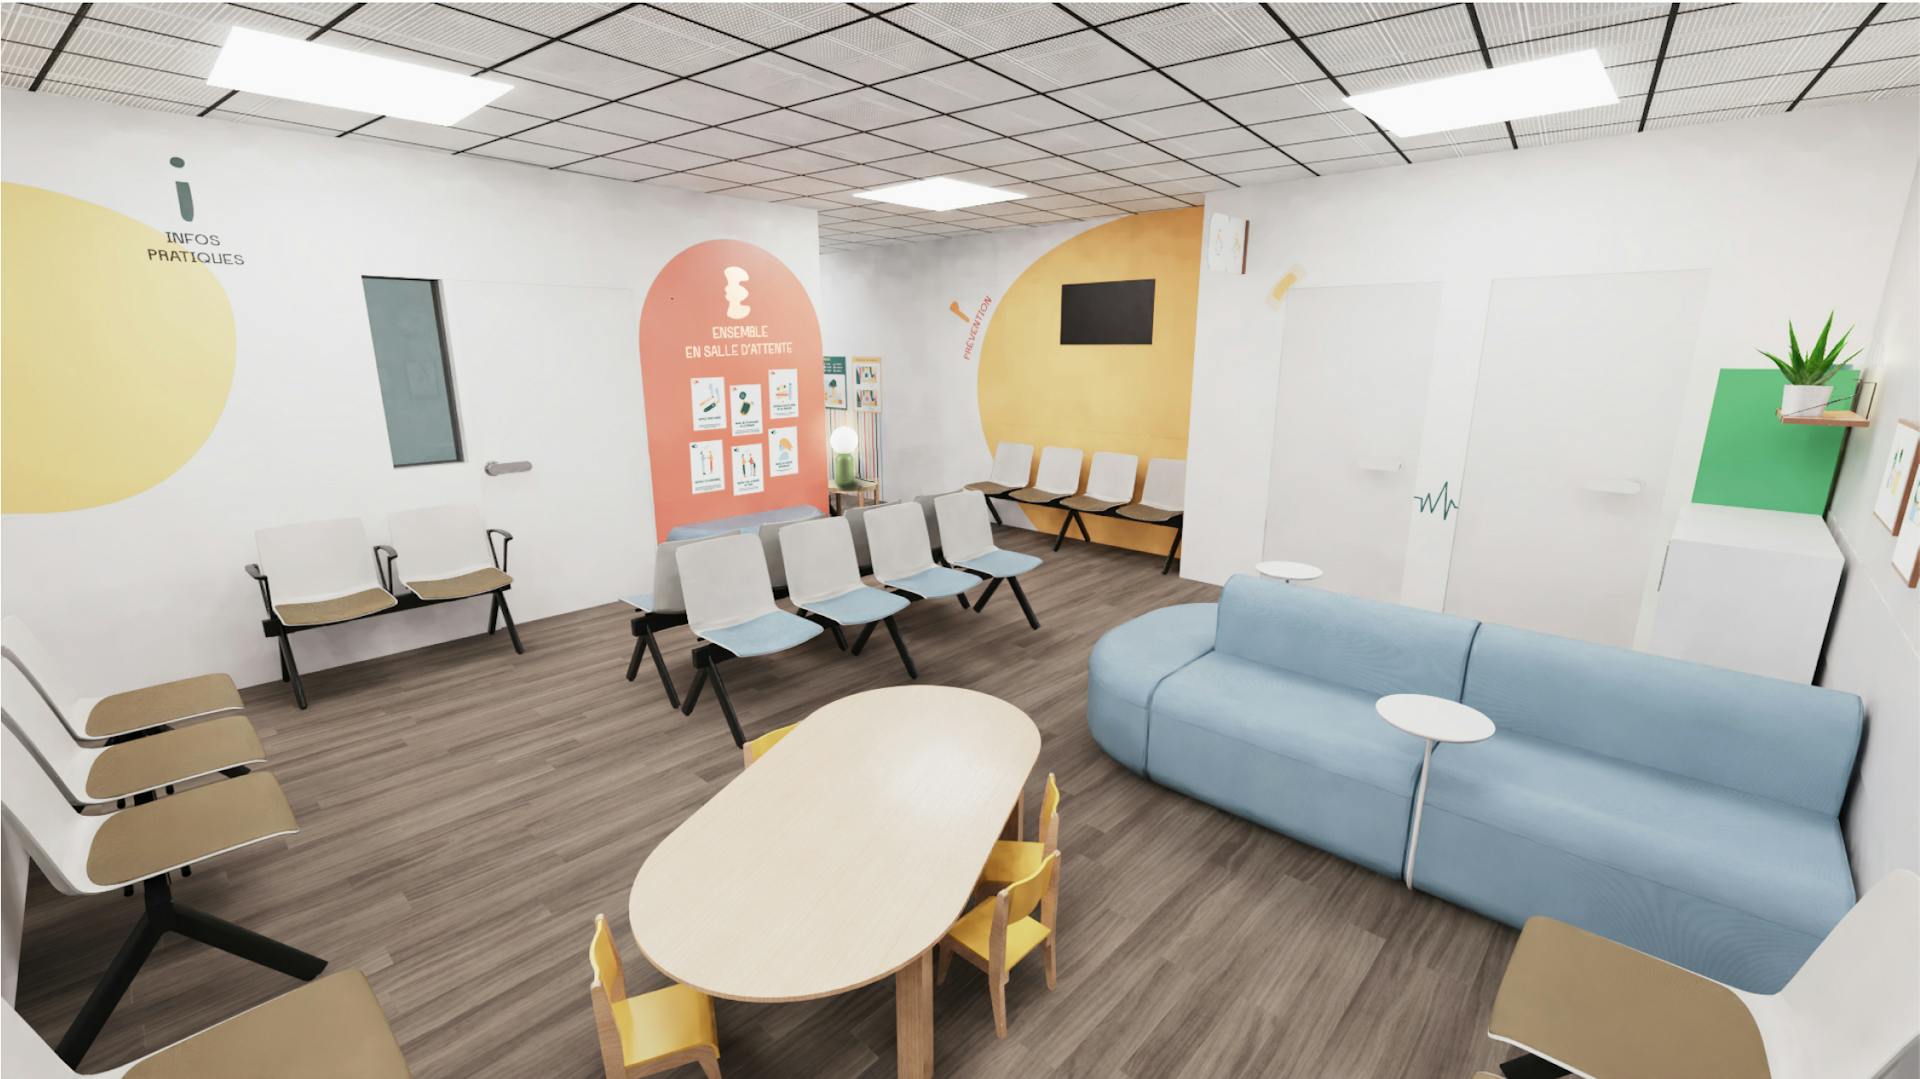 Modélisation 3D du design d'espace pensé par l'agence de design d'espace Studio Katra pour les urgences pédiatriques du CHU de Montpellier.